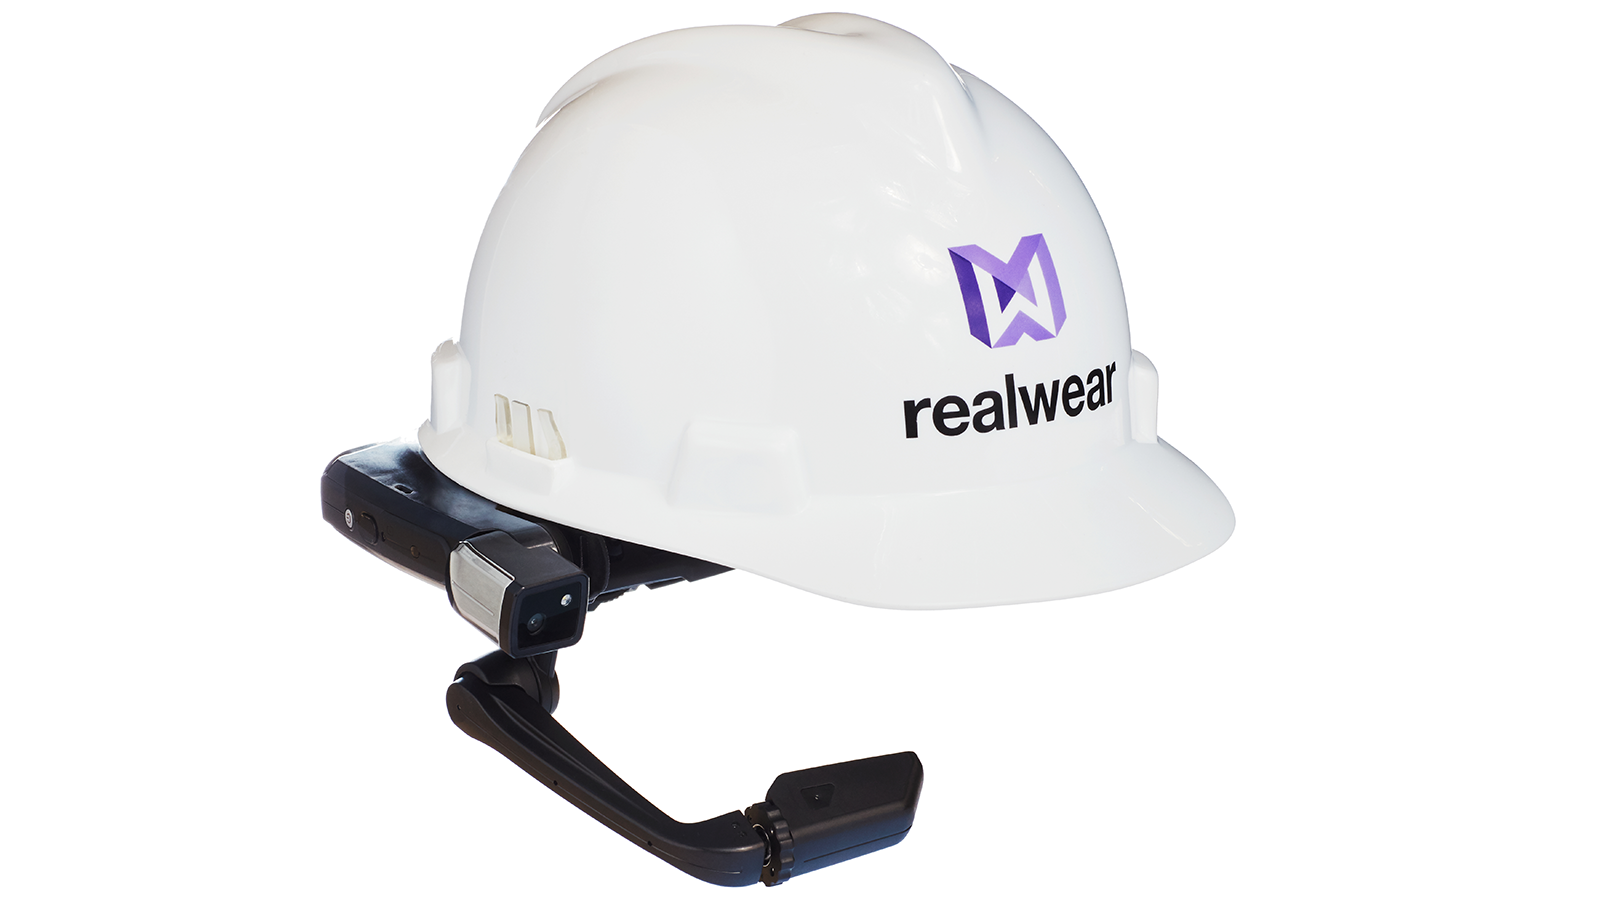 Image of a RealWear helmet.